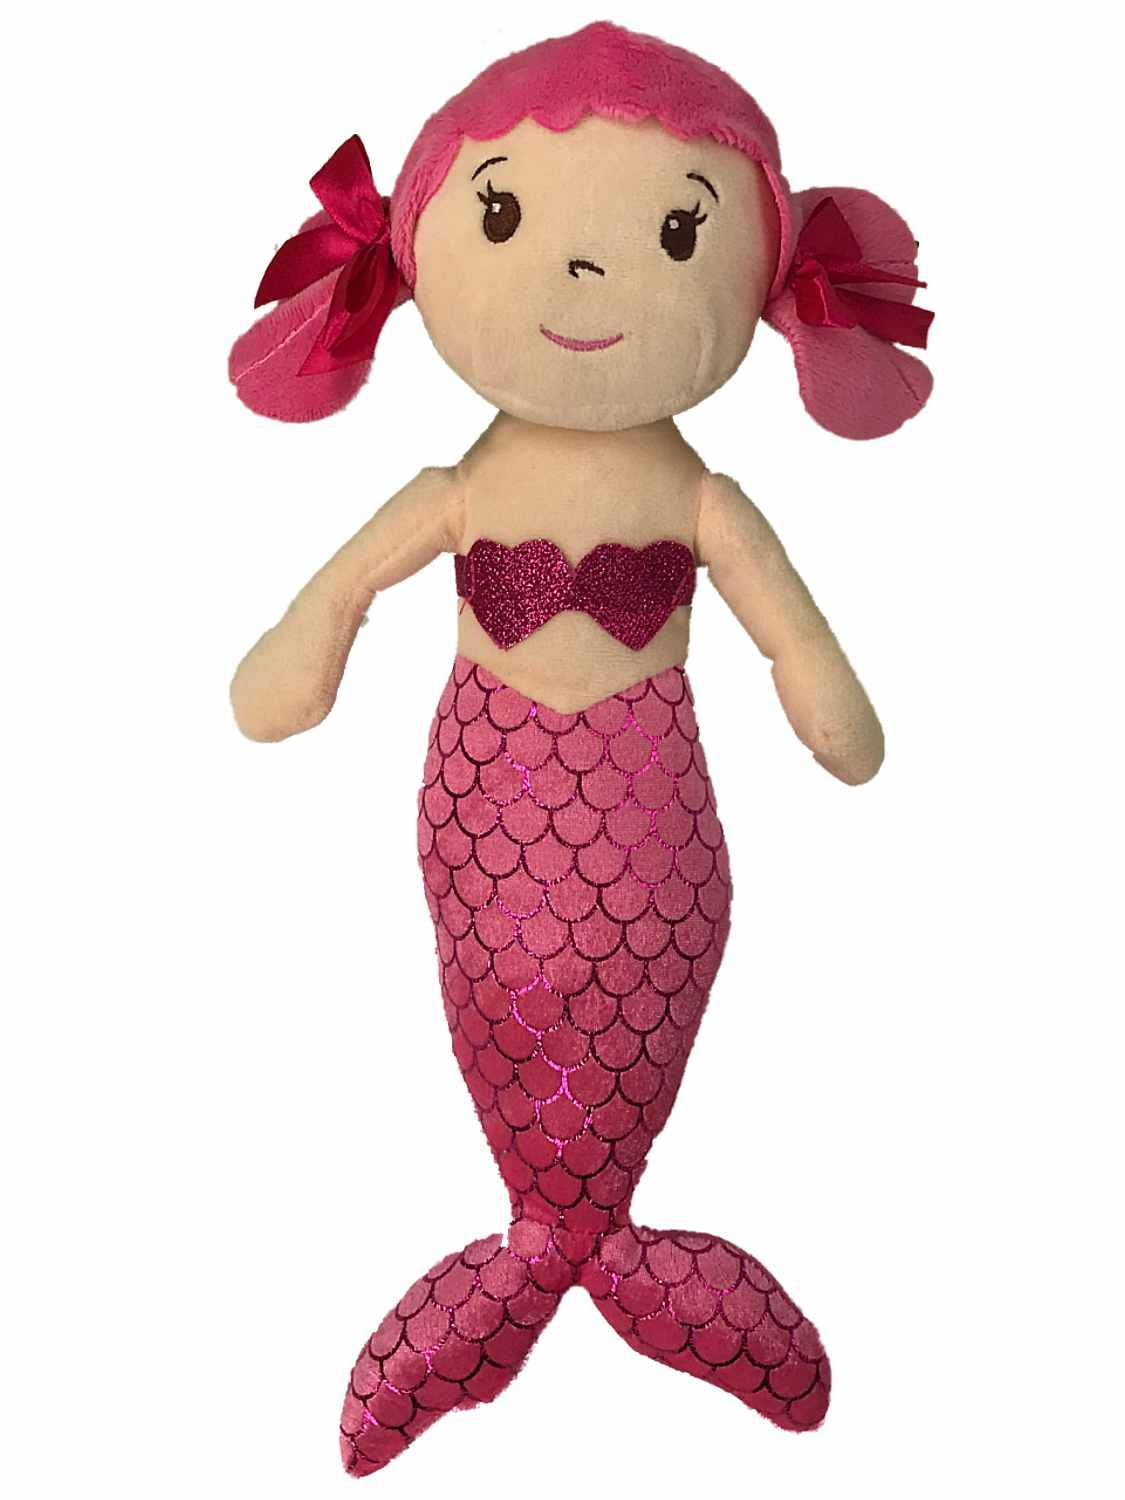 mermaid stuffed animal walmart